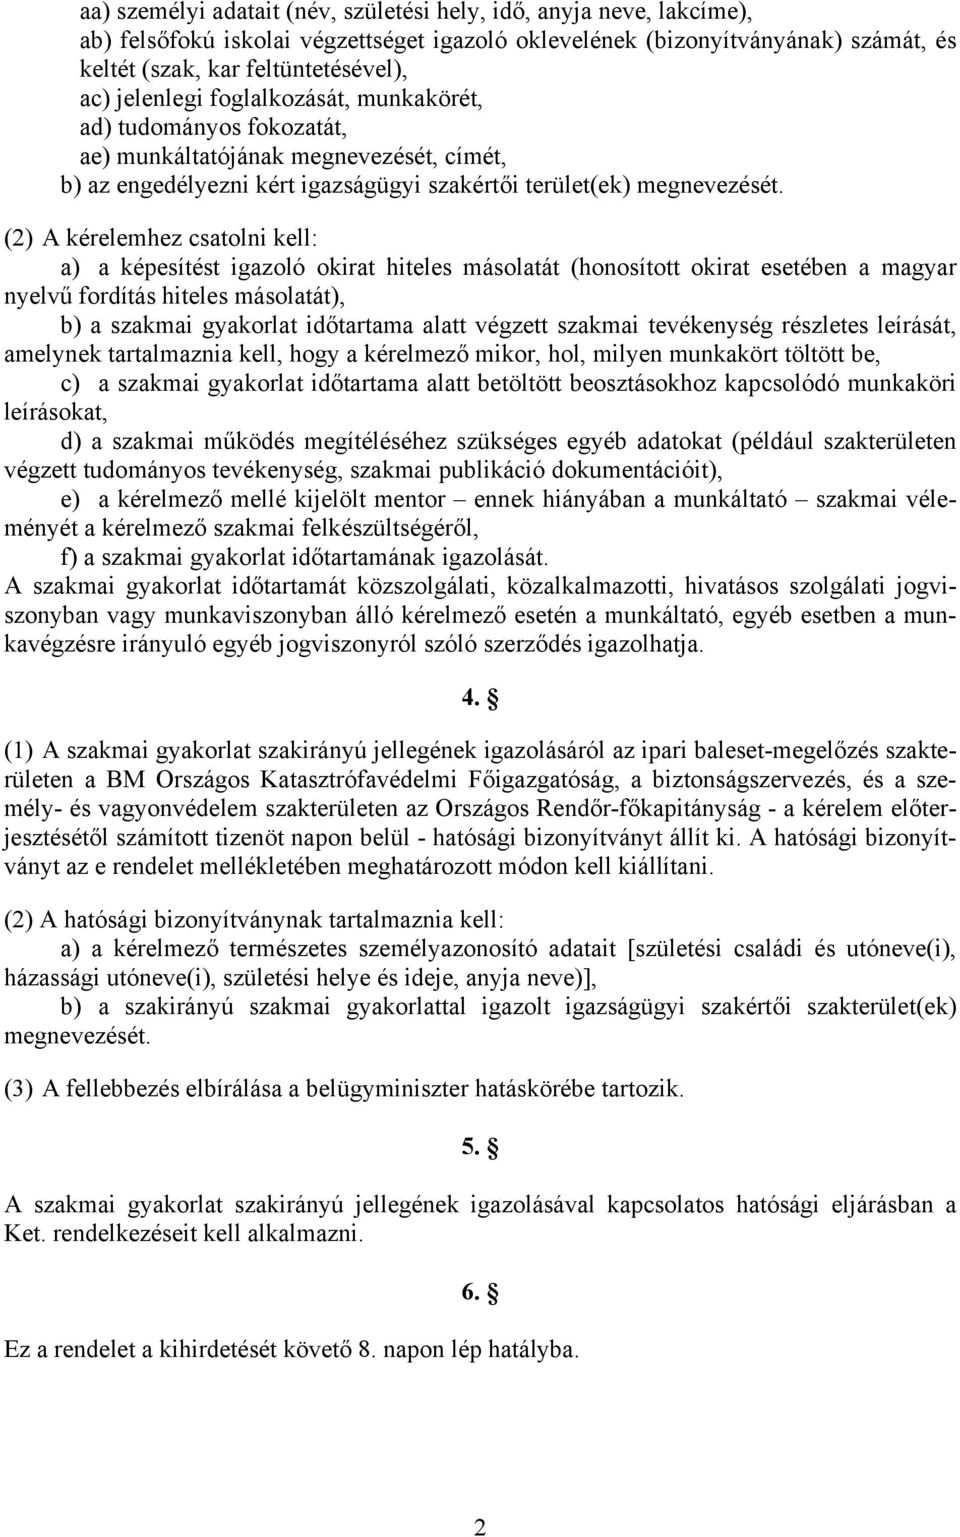 (2) A kérelemhez csatolni kell: a) a képesítést igazoló okirat hiteles másolatát (honosított okirat esetében a magyar nyelvű fordítás hiteles másolatát), b) a szakmai gyakorlat időtartama alatt